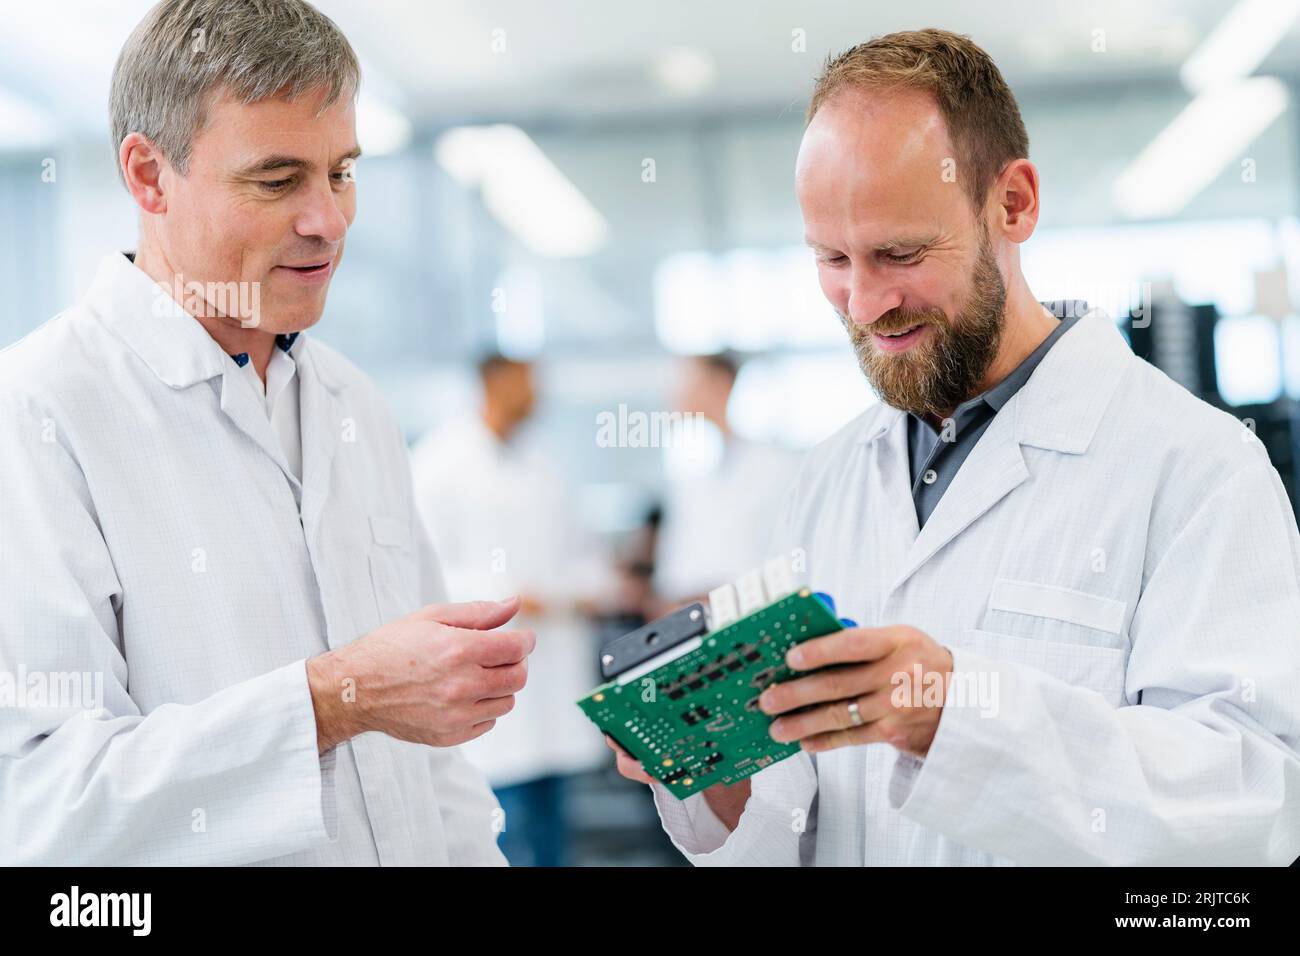 Deutschland, M51, M45, M31, M28, Elektronikfertigung in einem Unternehmen, Besprechung Mitarbeiter in weißen Kitteln mit Plantine Stock Photo